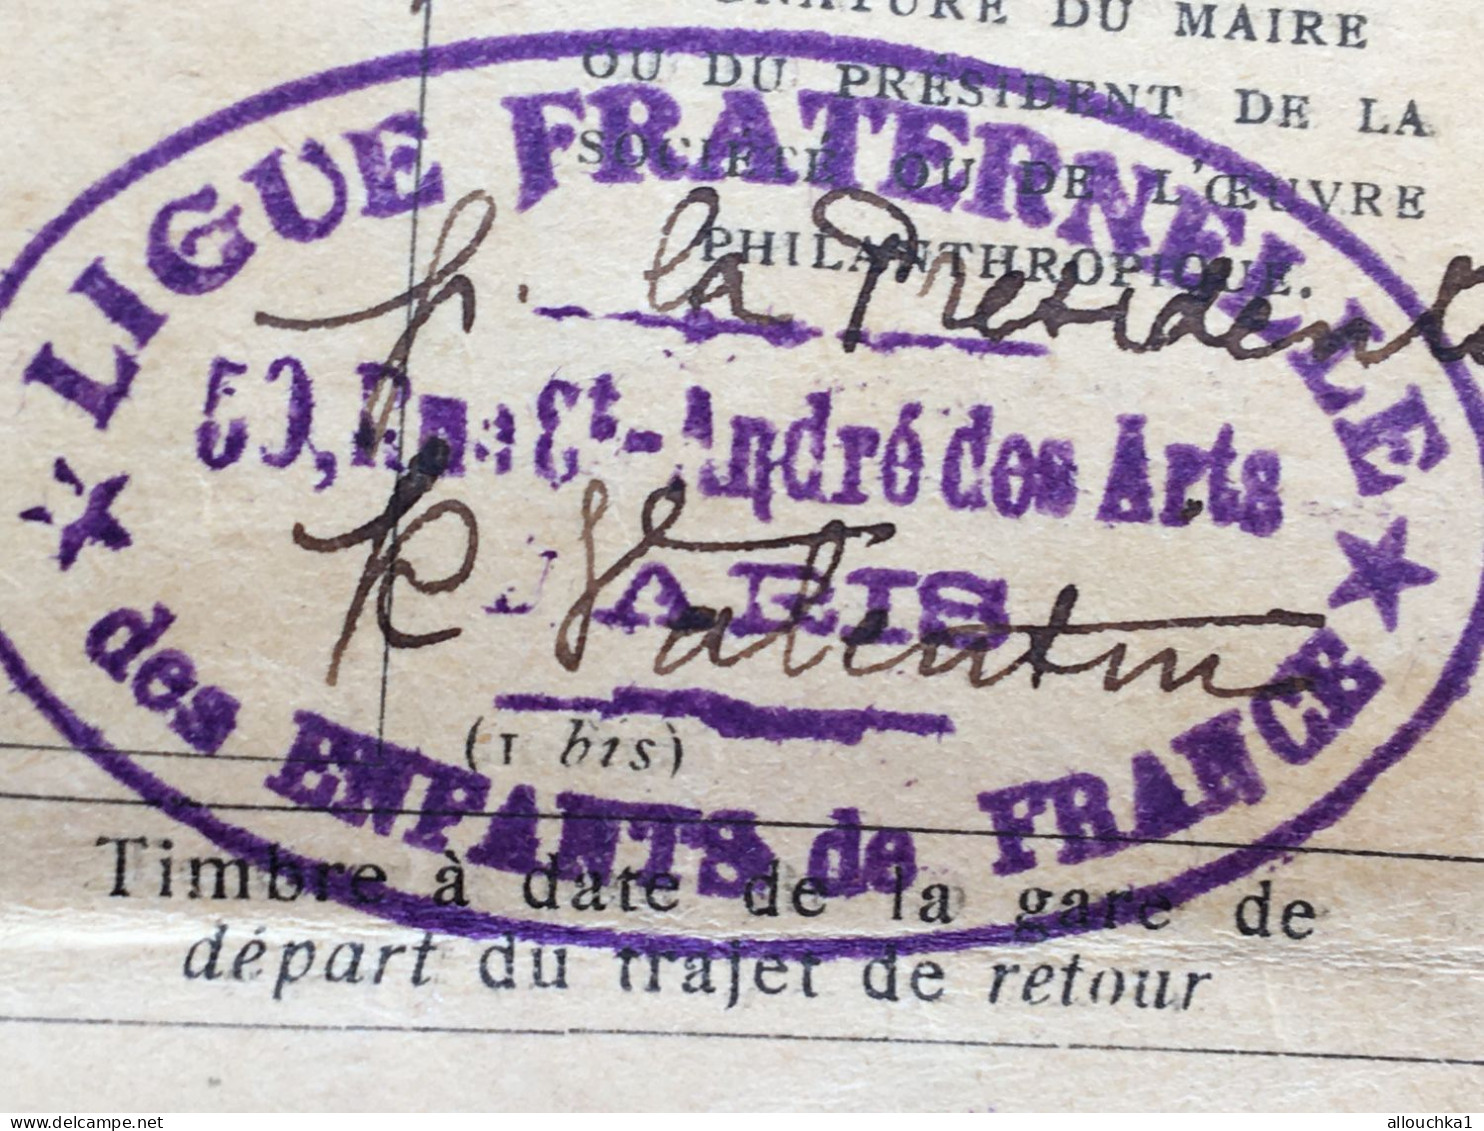 1936-Rare Chemins De Fer Alsace Lorraine-Est Etat Du Midi-Nord P.L.M-Ligue Fraternelle Enfants France-Paris à Ribérac - Chemin De Fer